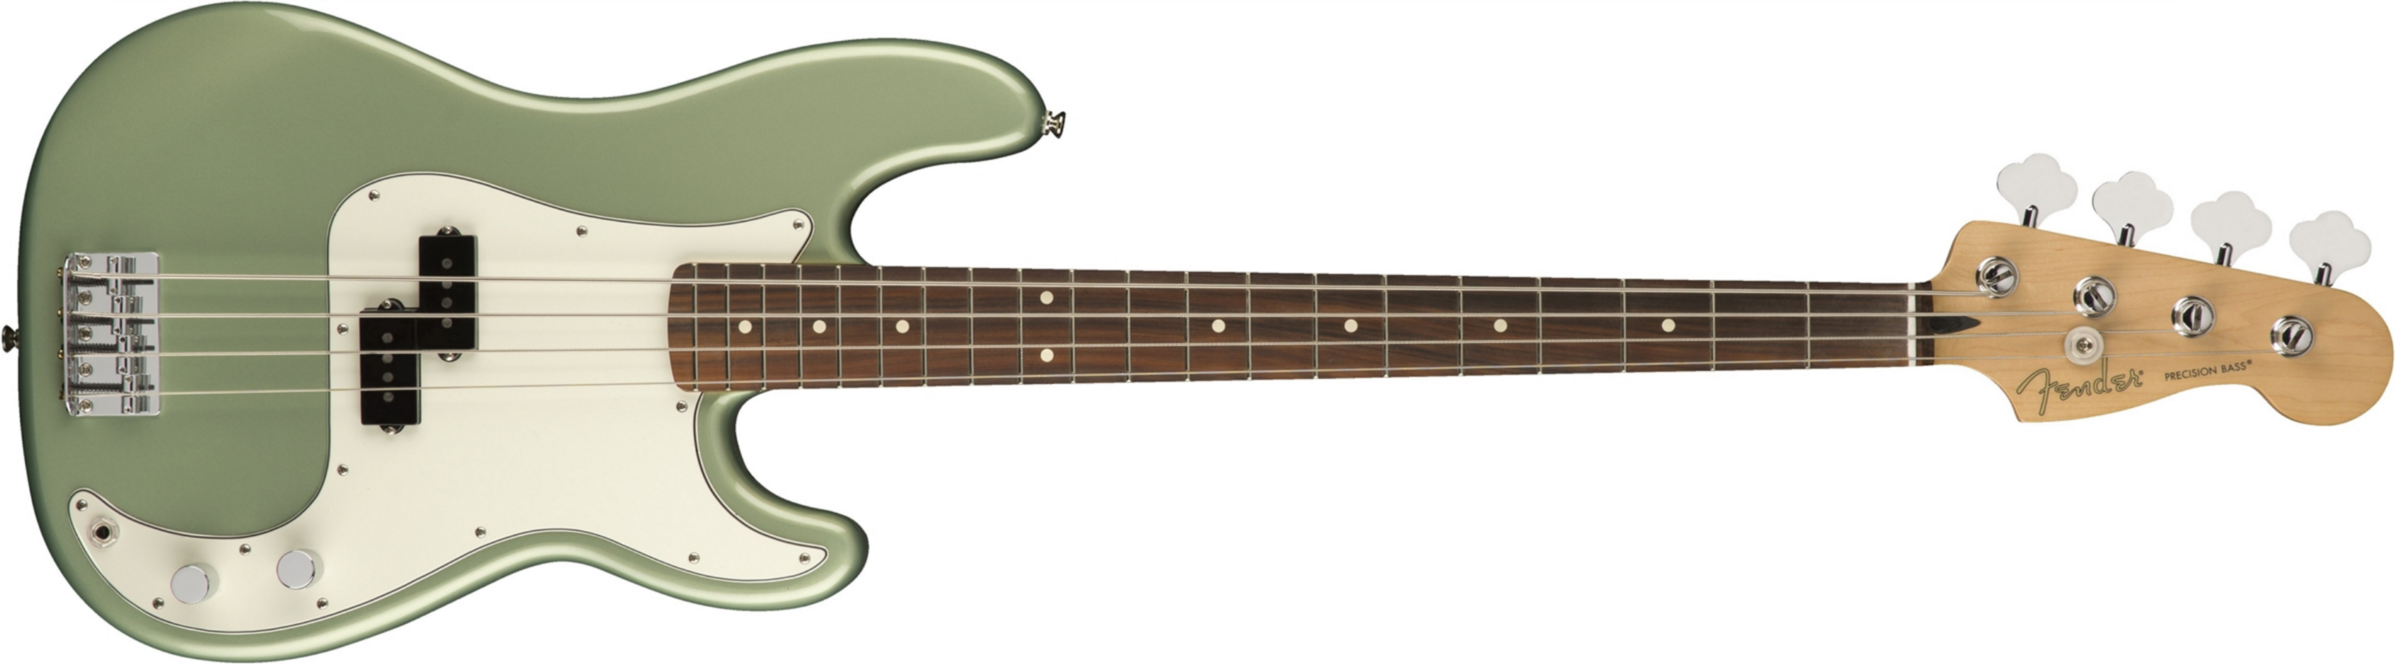 Fender Precision Bass Player Mex Pf - Sage Green Metallic - Bajo eléctrico de cuerpo sólido - Main picture